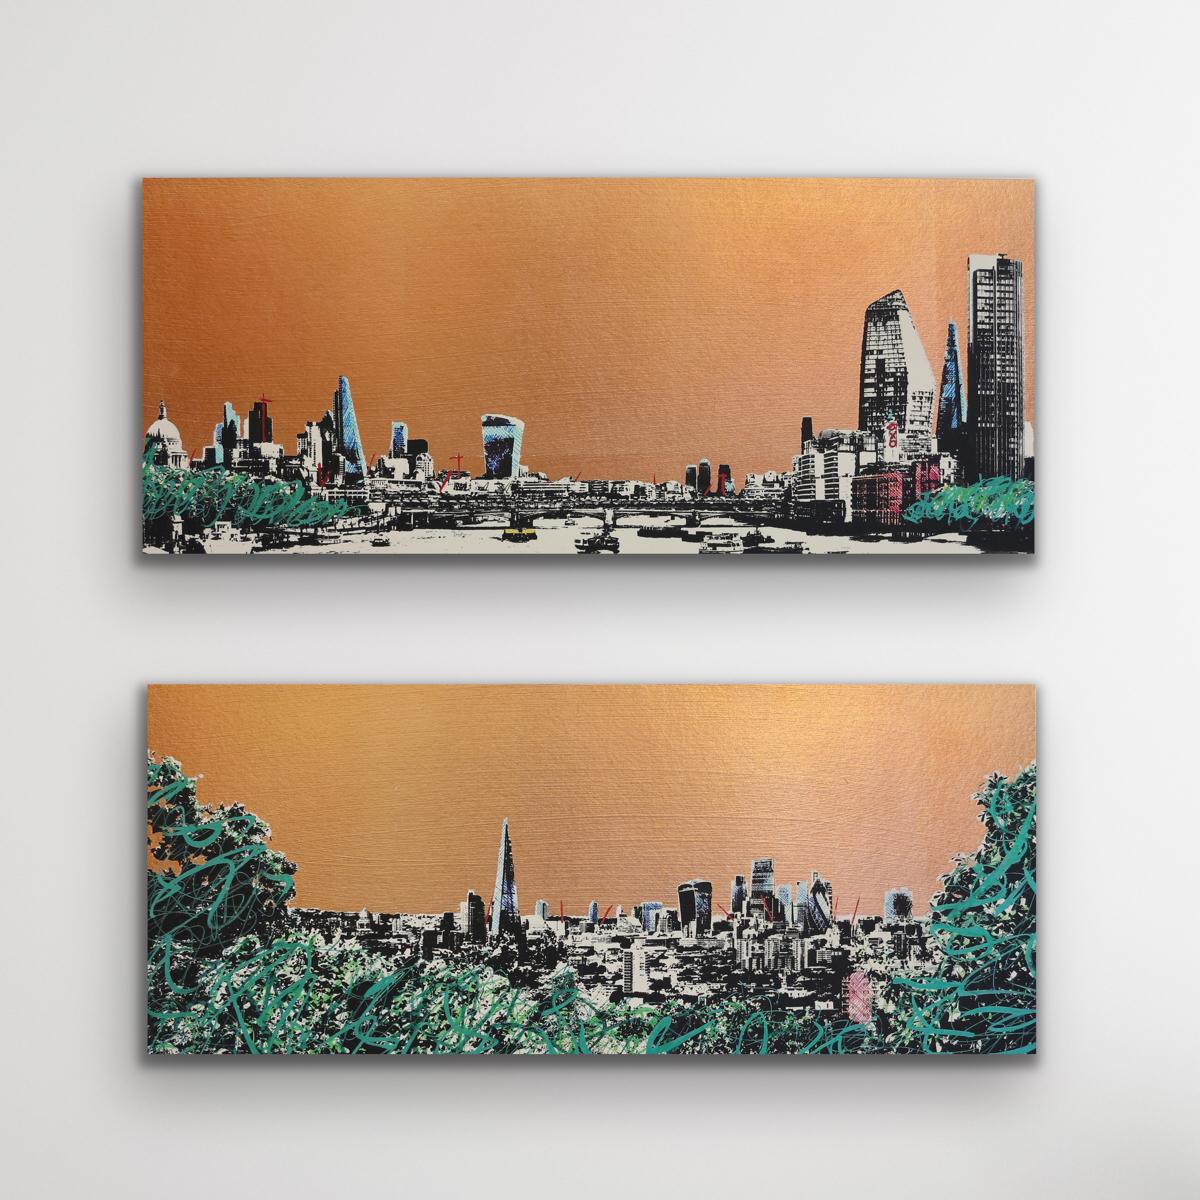 Jason Lilley Landscape Print – Ein wenig von der Themse, ein wenig von Londoner Diptychon 